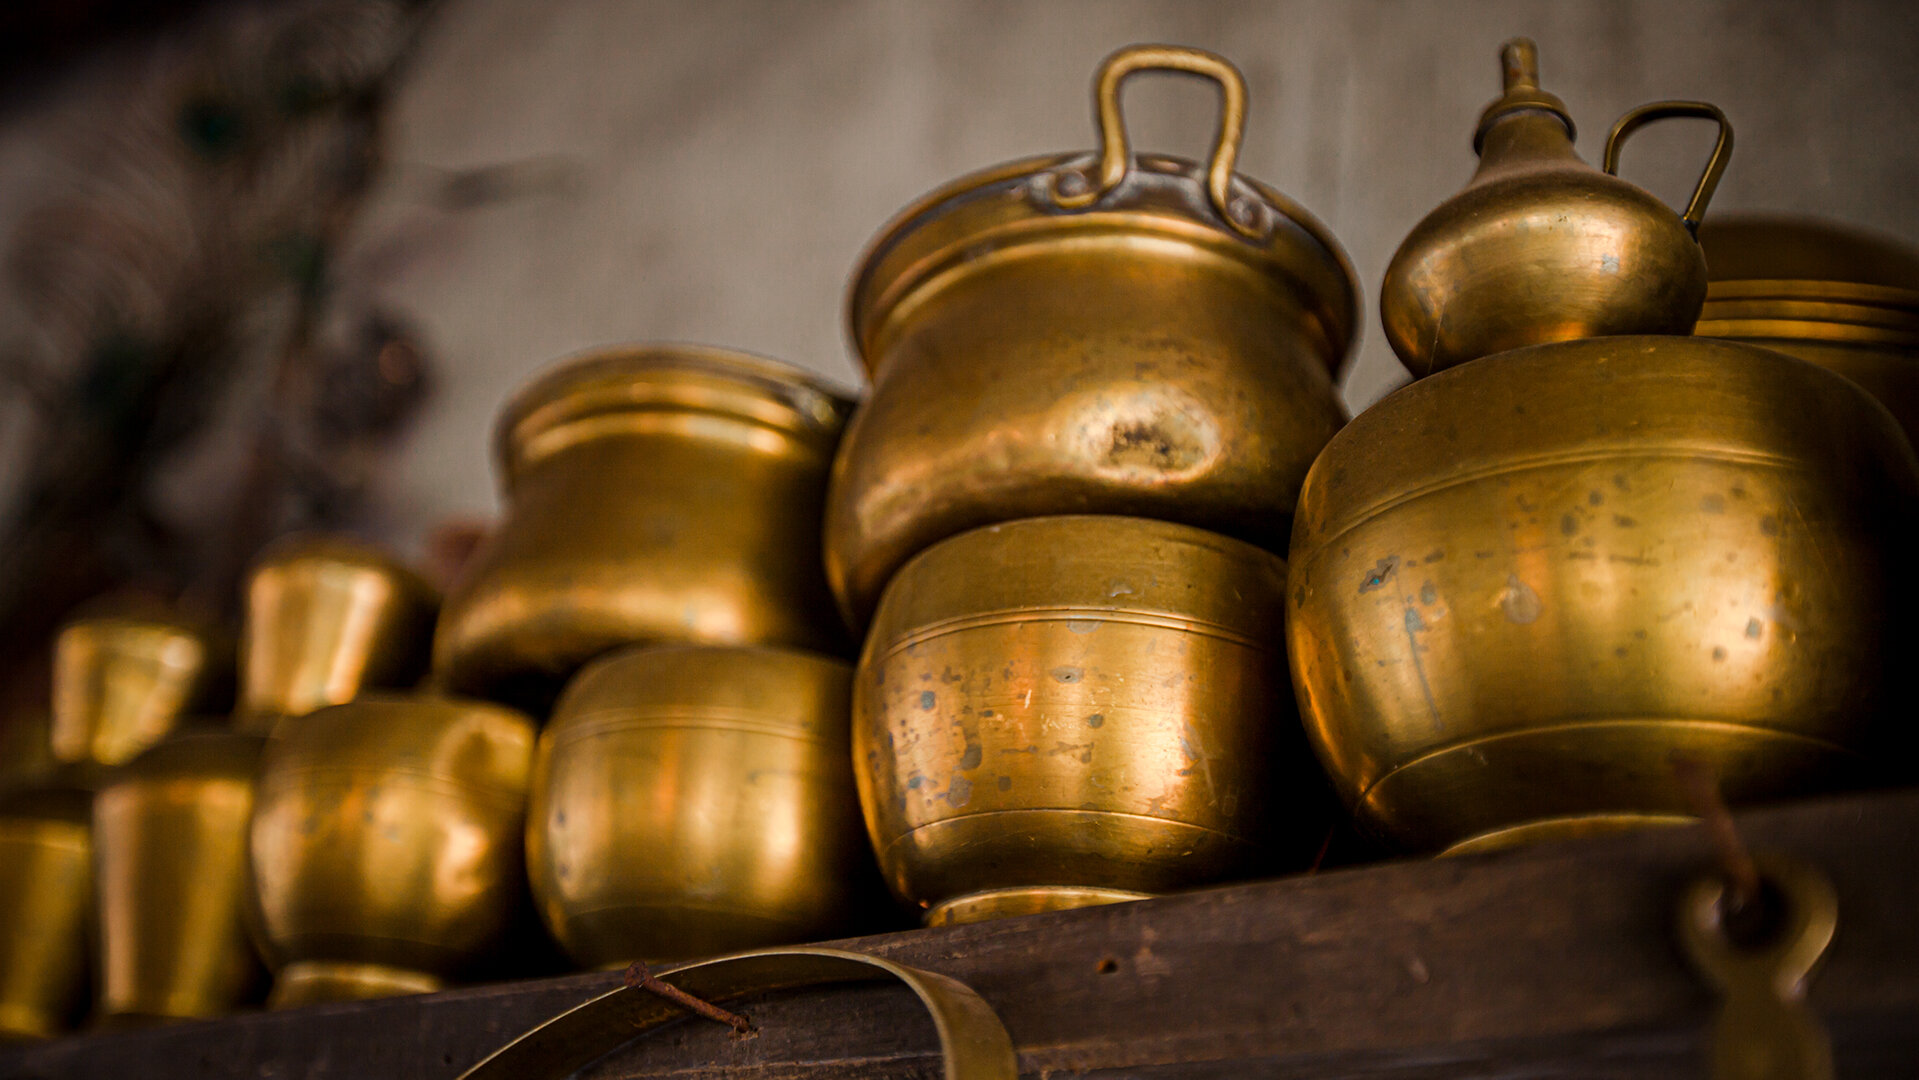 Antique Brass Utensils - Aurangabad, India